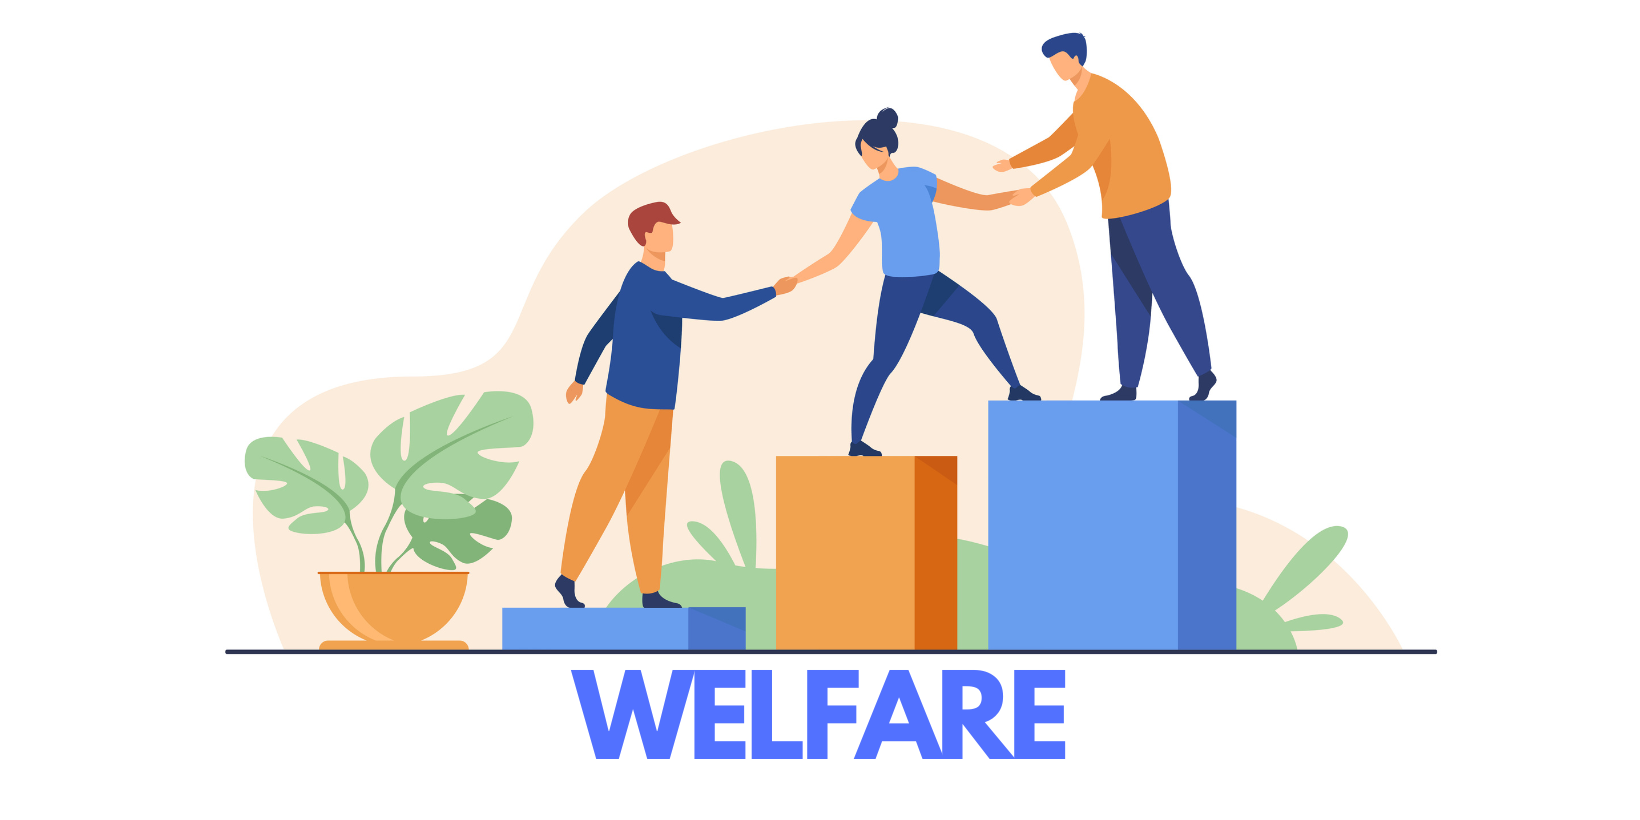 Featured image for “Nuovo accordo sui flexible benefit e welfare aziendale FCA”